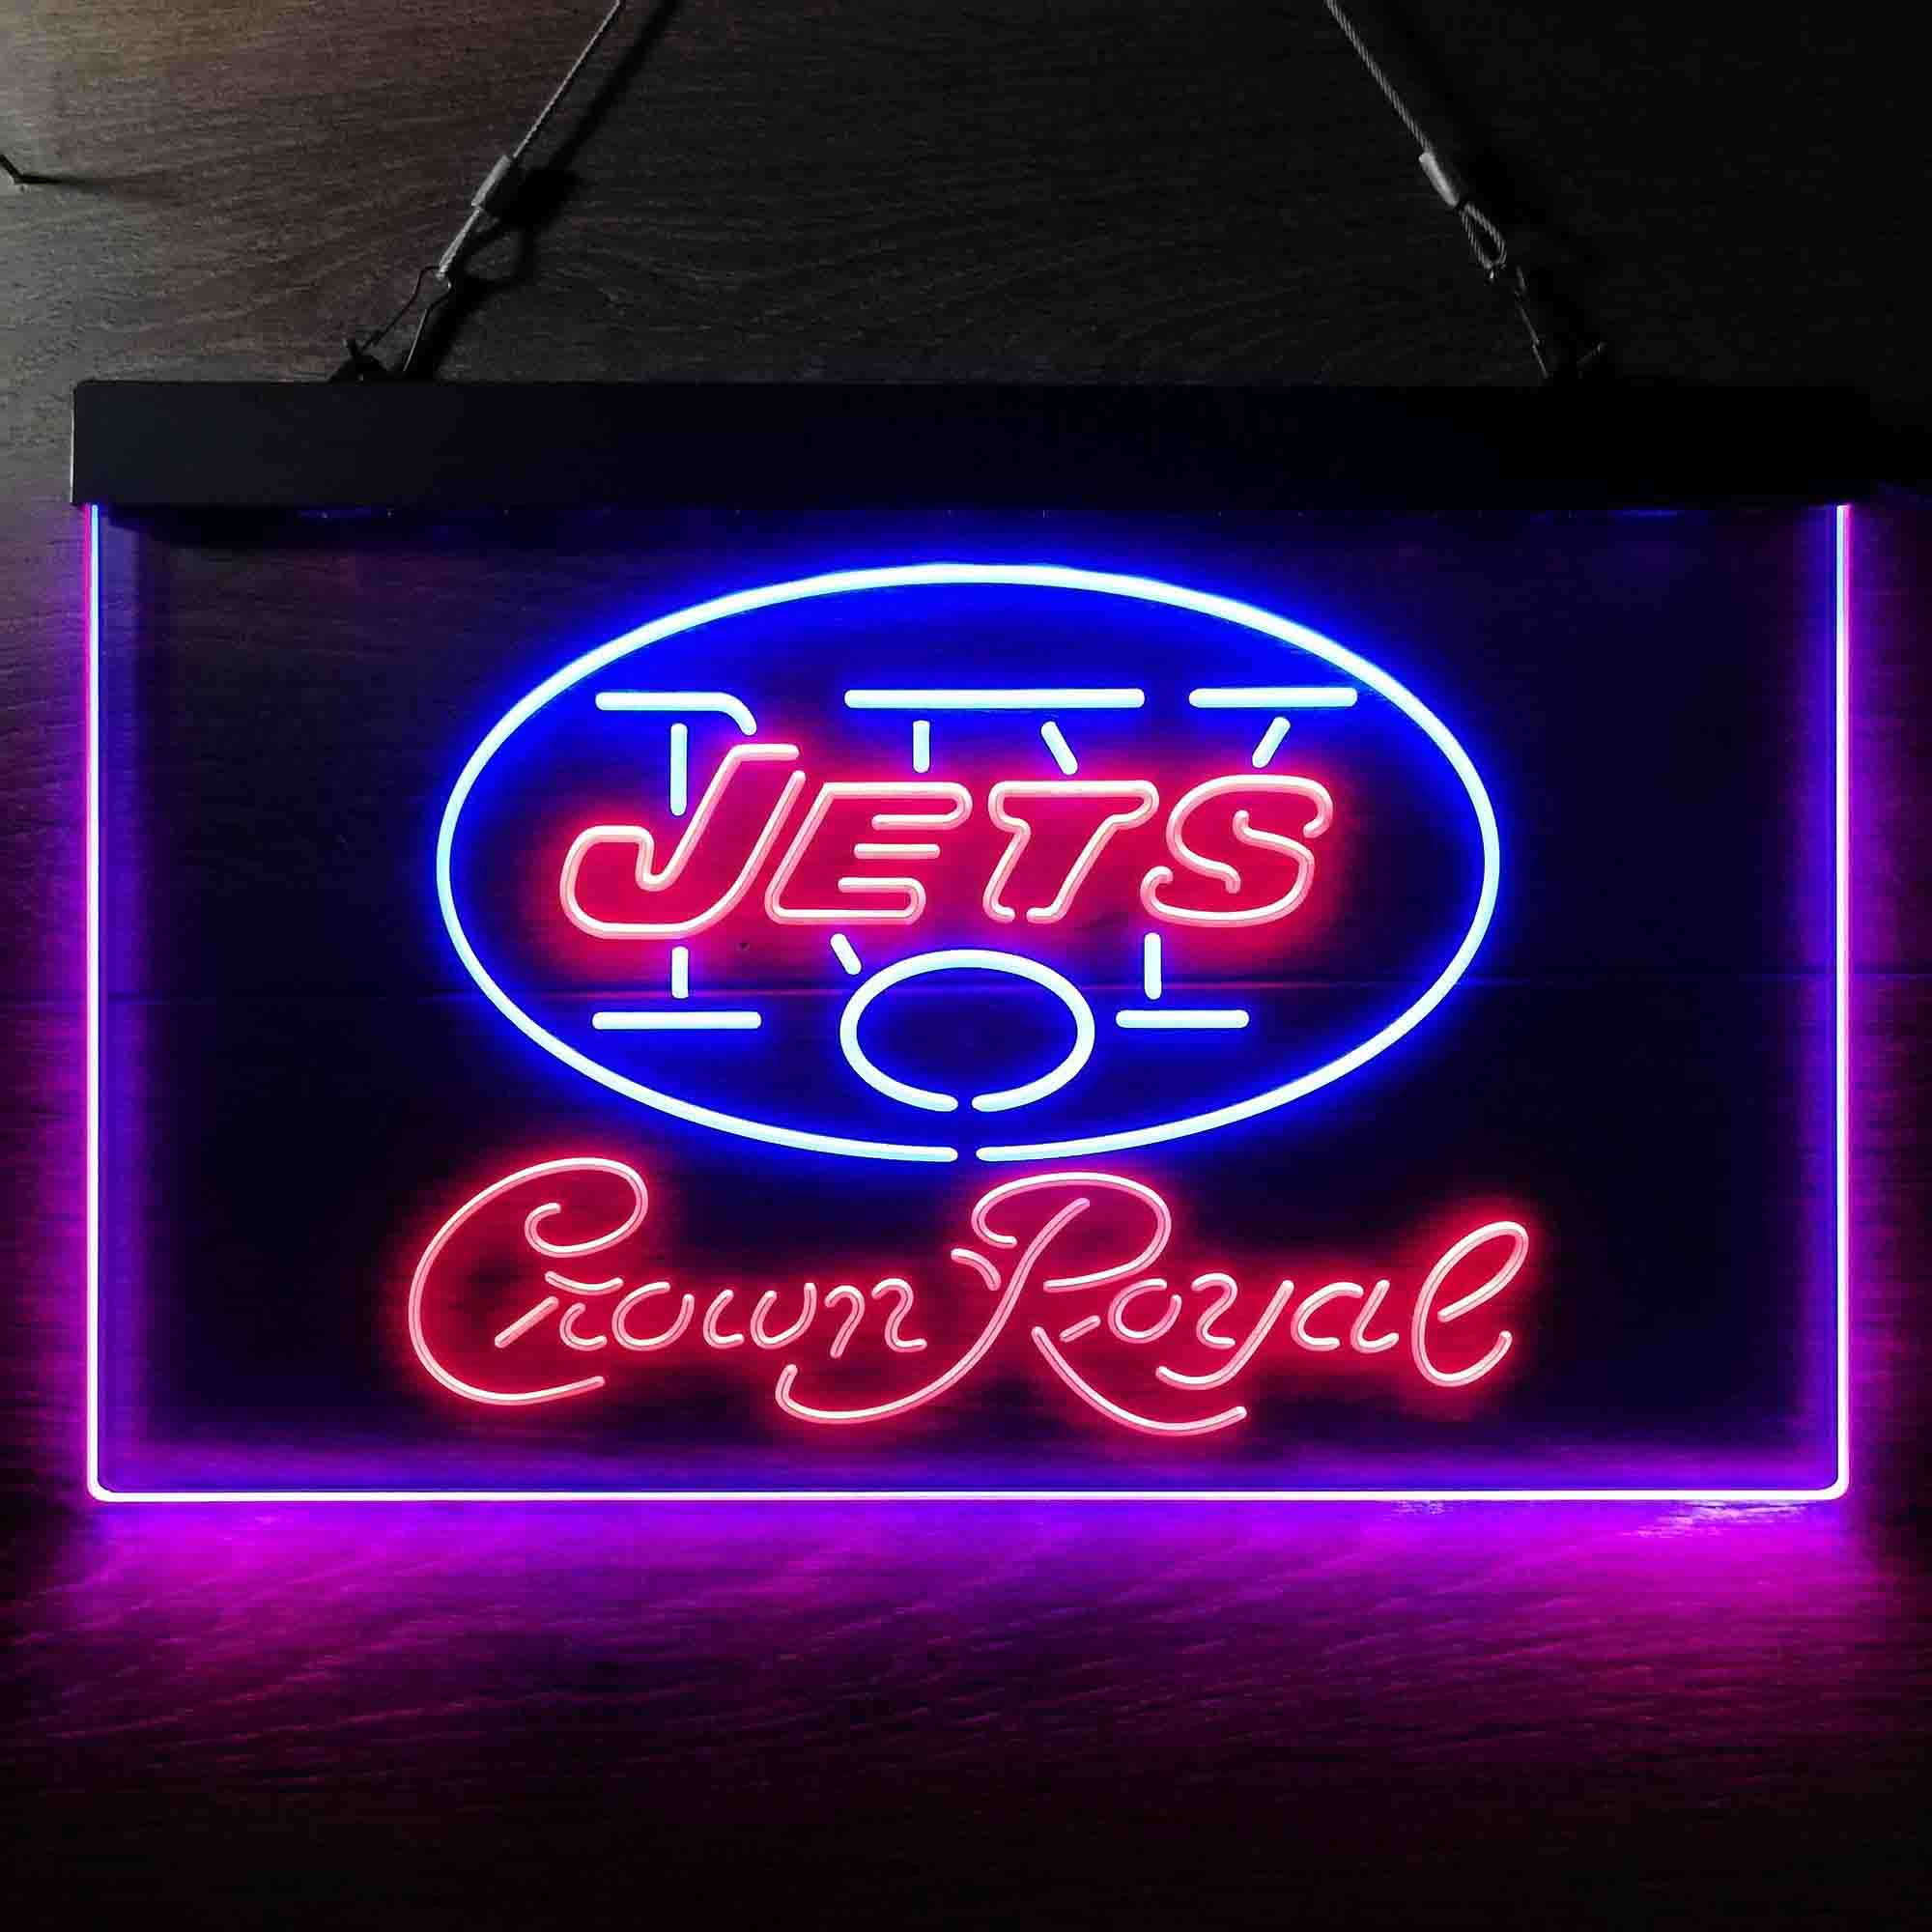 Crown Royal Bar New York Jets Est. 1960 LED Neon Sign